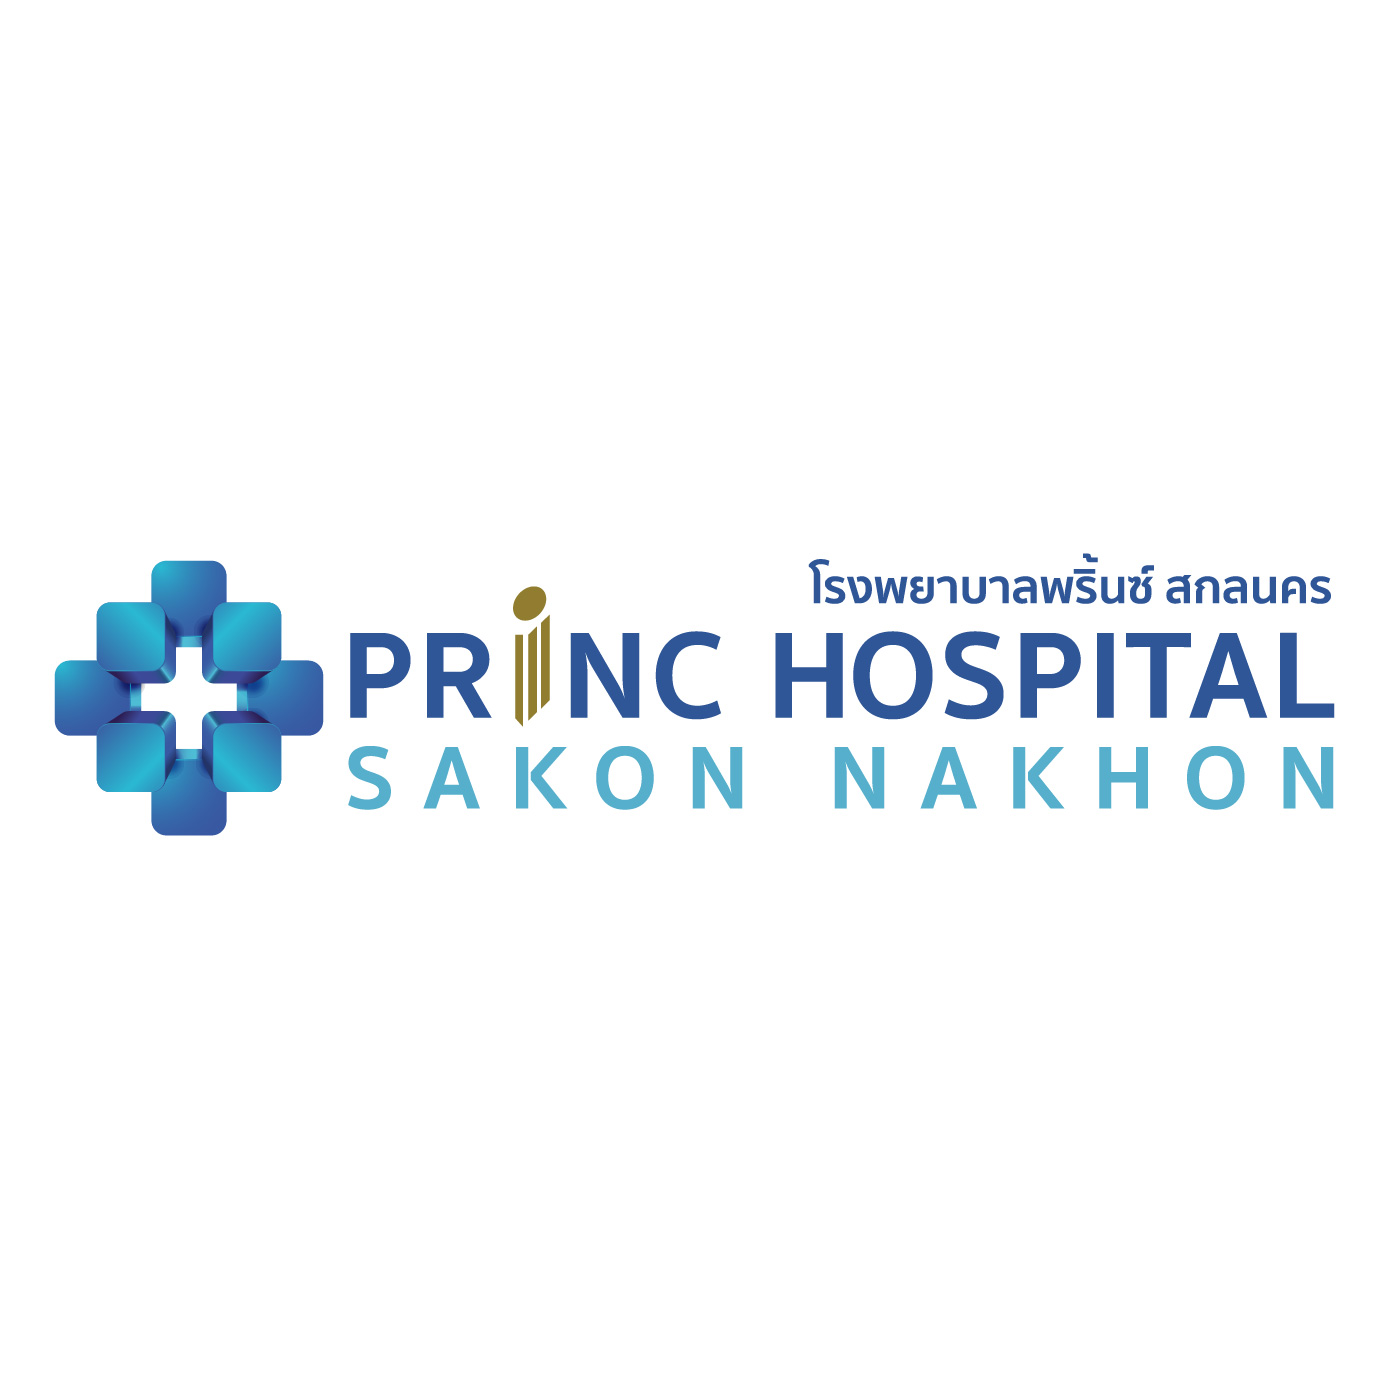 Princ Hospital Sakon Nakhon 01